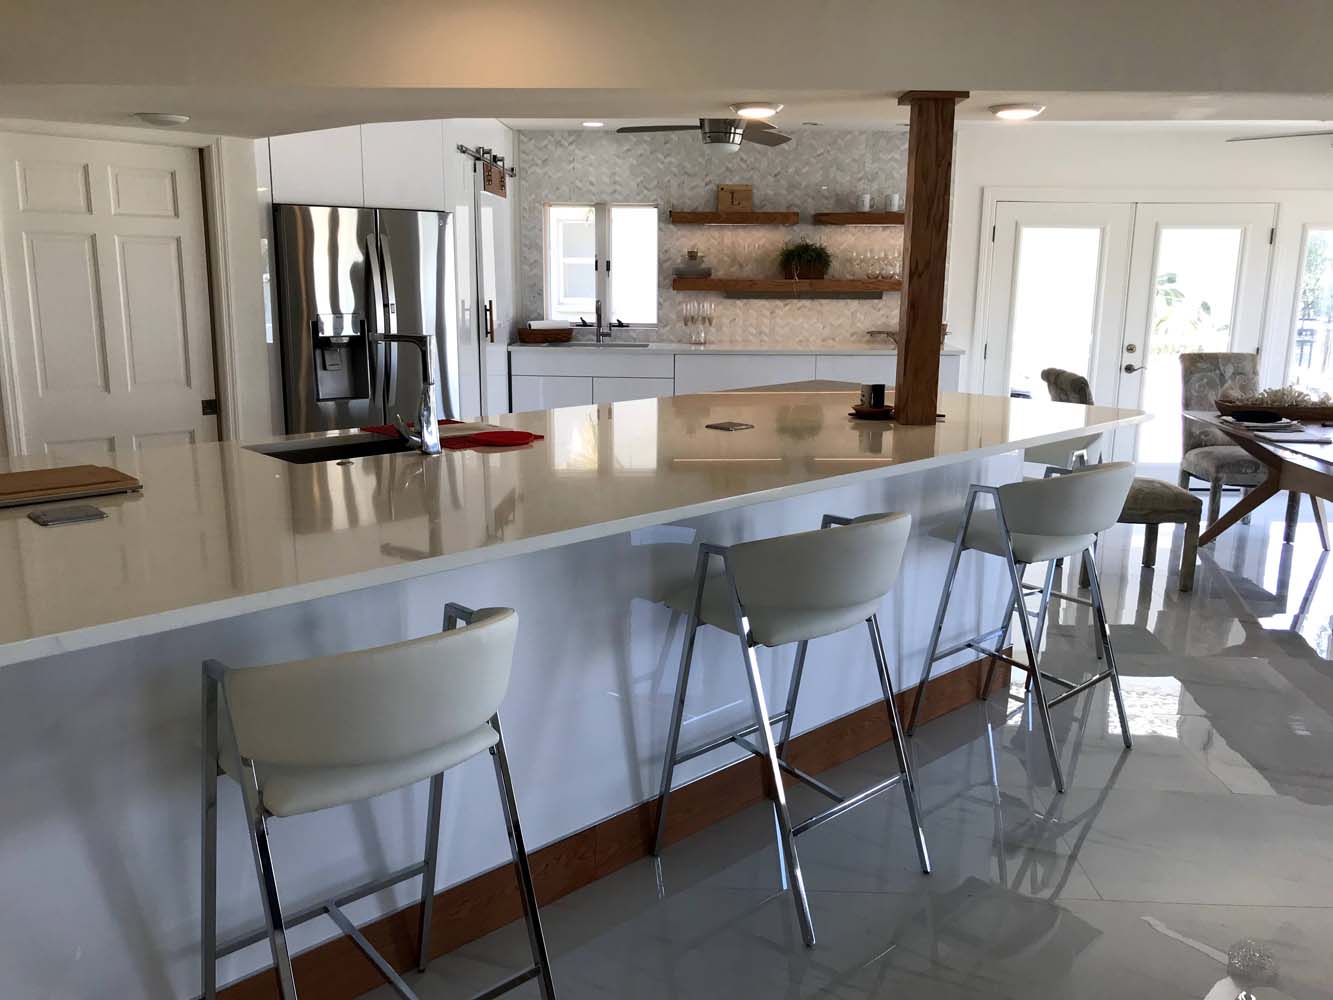 Kitchen-Belleair-Modern-Design-kitchen-bar